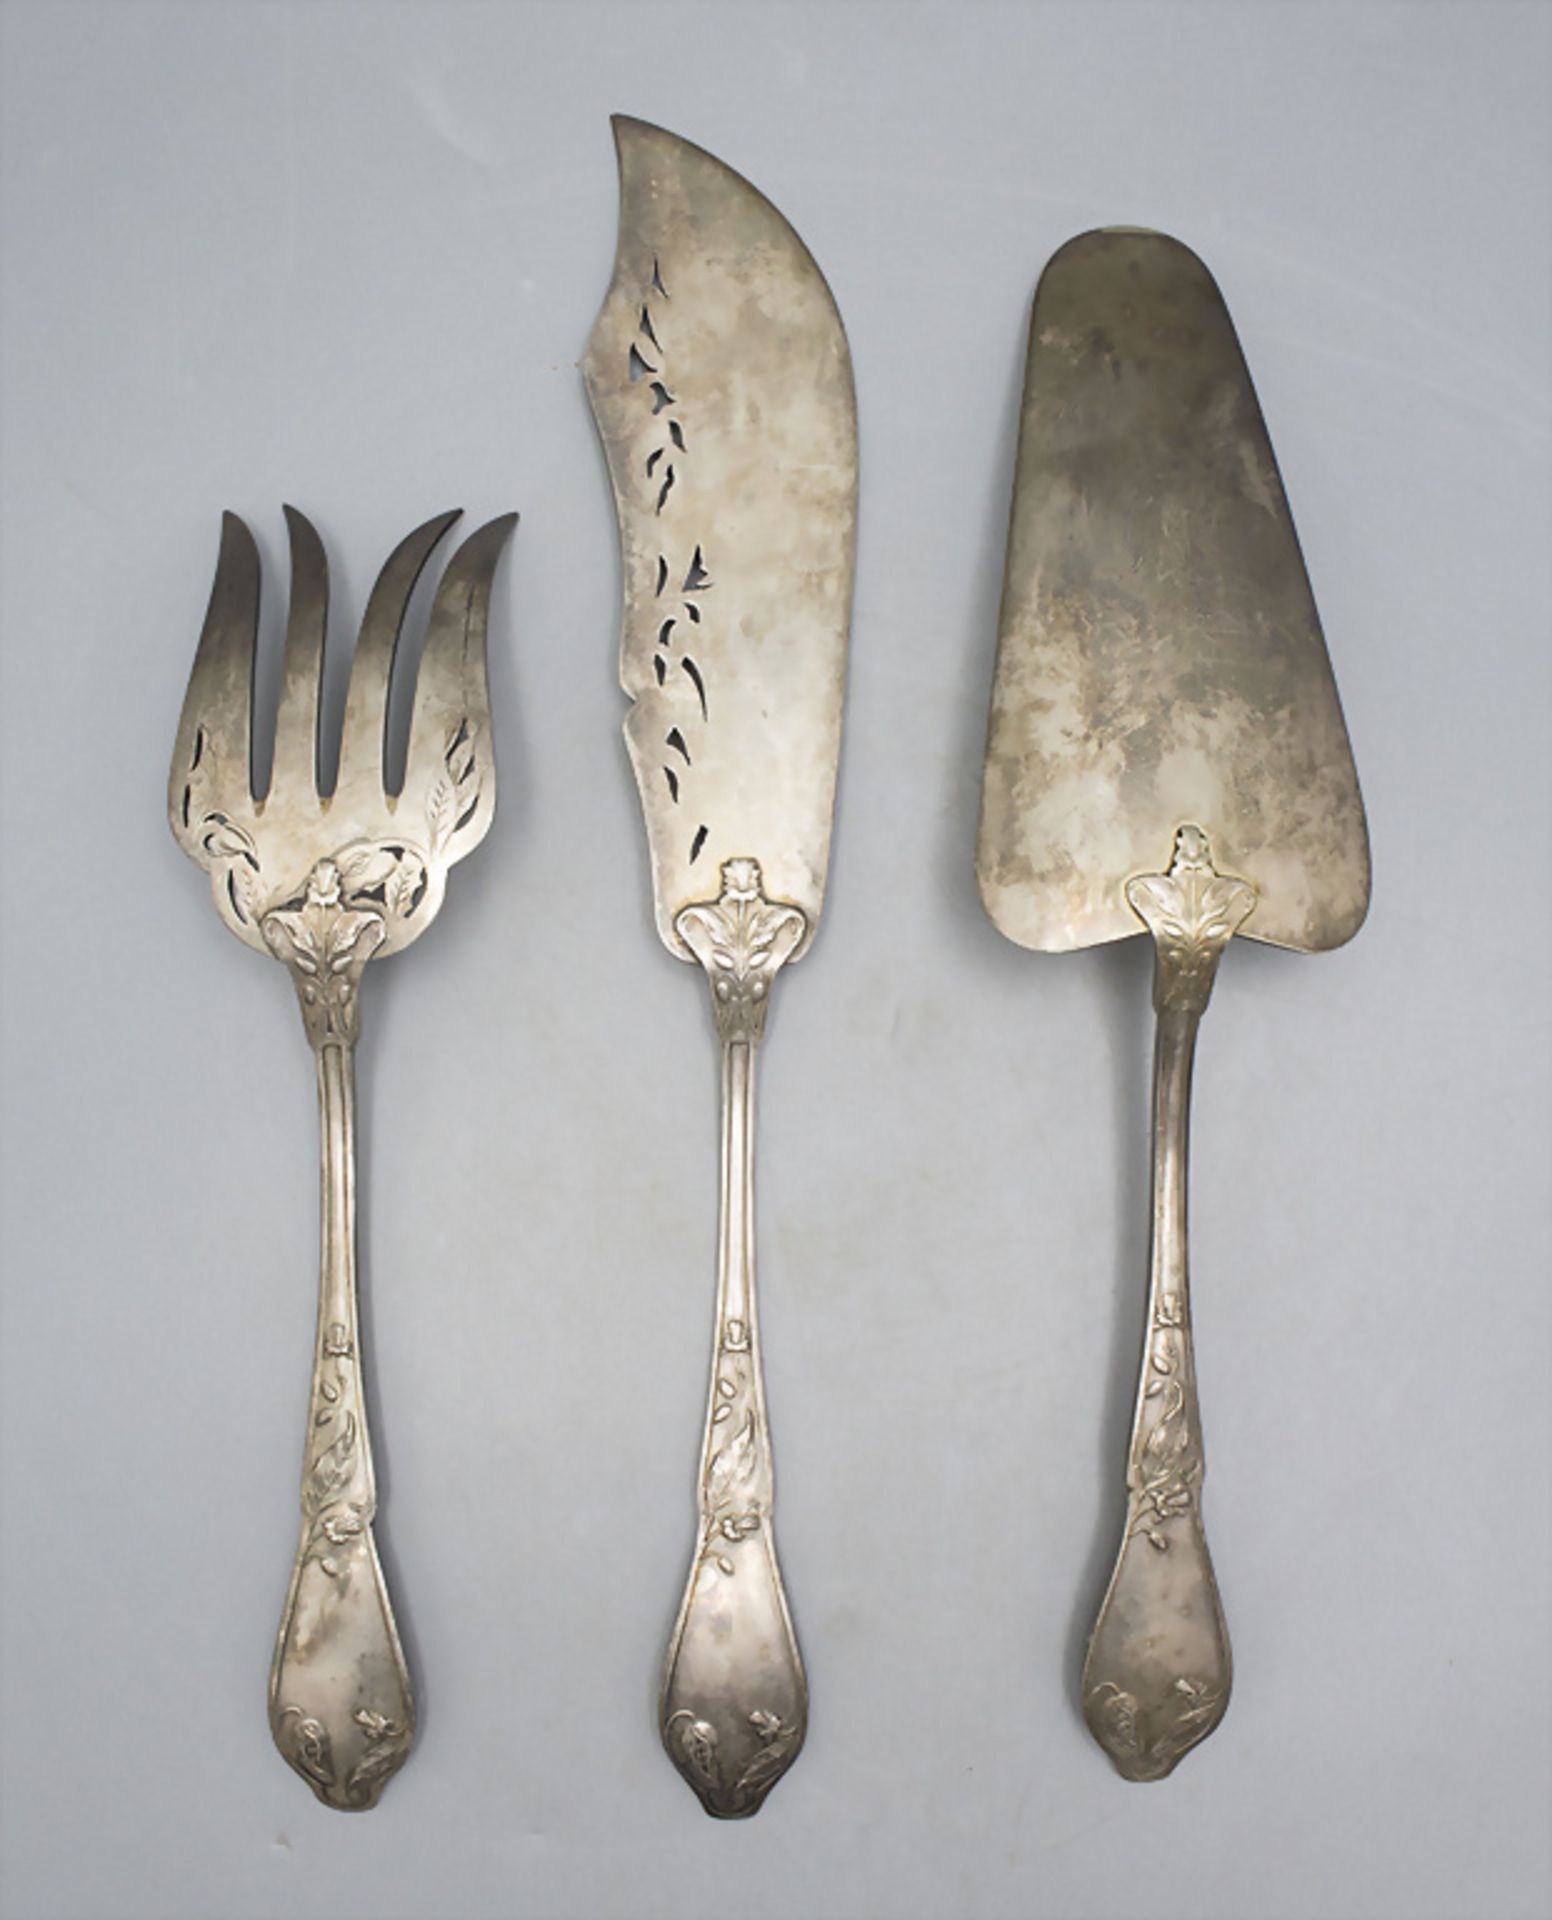 3 Teile Jugendstil Vorlegebesteck / 3 pieces of Art Nouveau serving cutlery, Boulenger, Paris, ... - Image 2 of 4